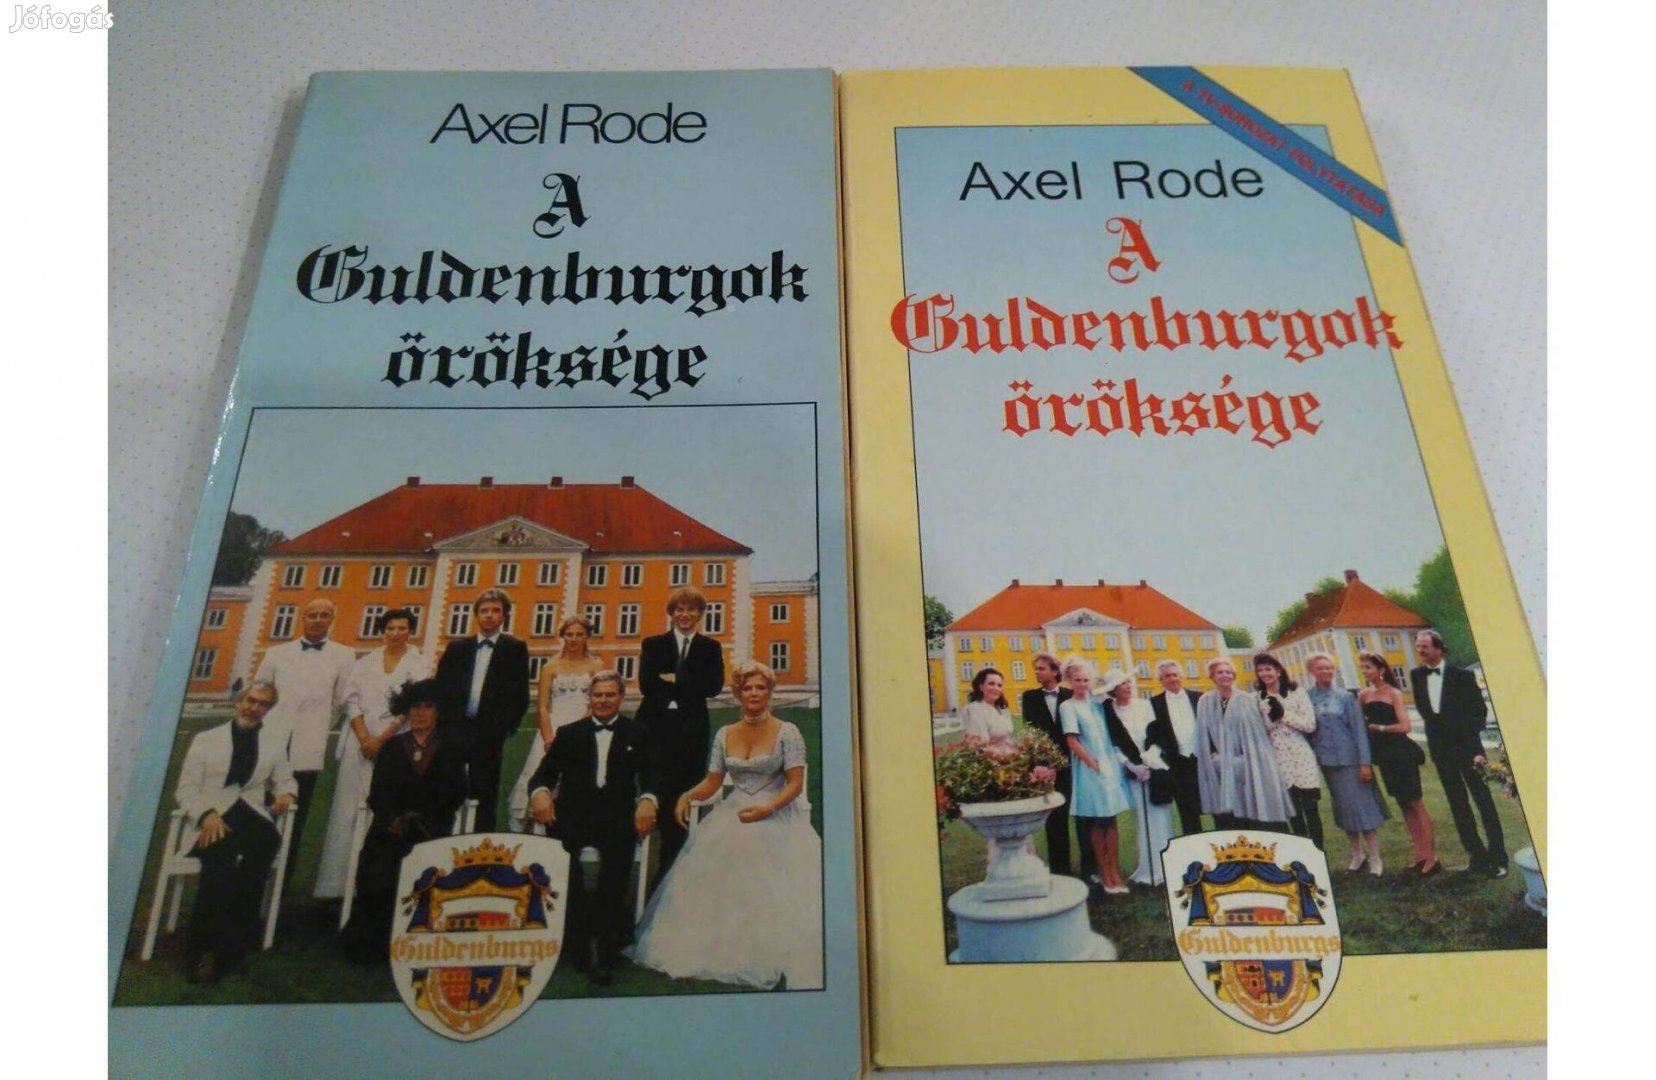 Axel Rode: A Guldenburgok öröksége (TV- sorozat) 1.-2. része eladó!